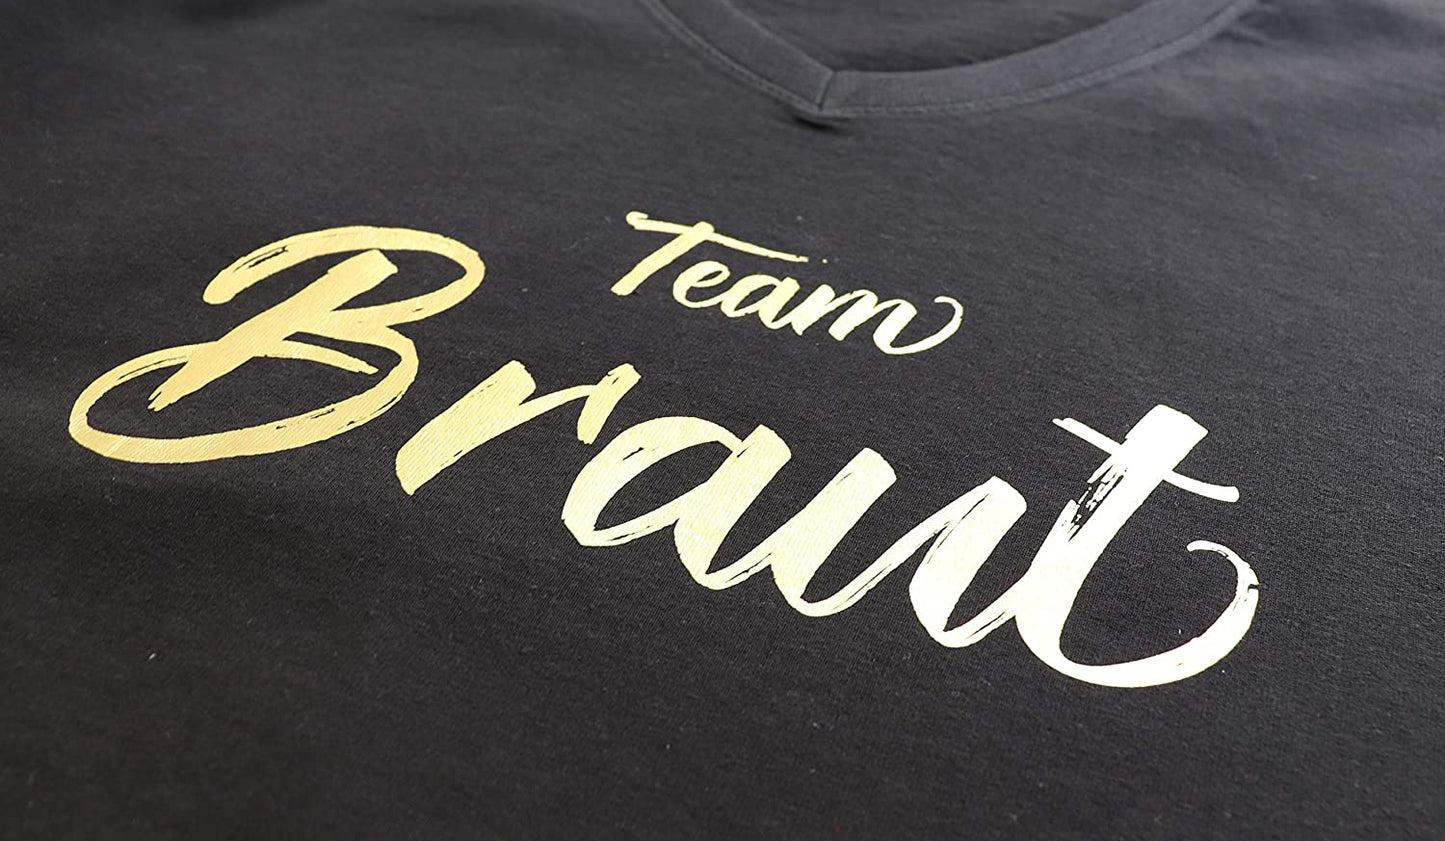 JGA Junggesellinnenabschied, Team Braut Frauen T-Shirt, Damen T-Shirt V-Ausschnitt (Team Braut, S)